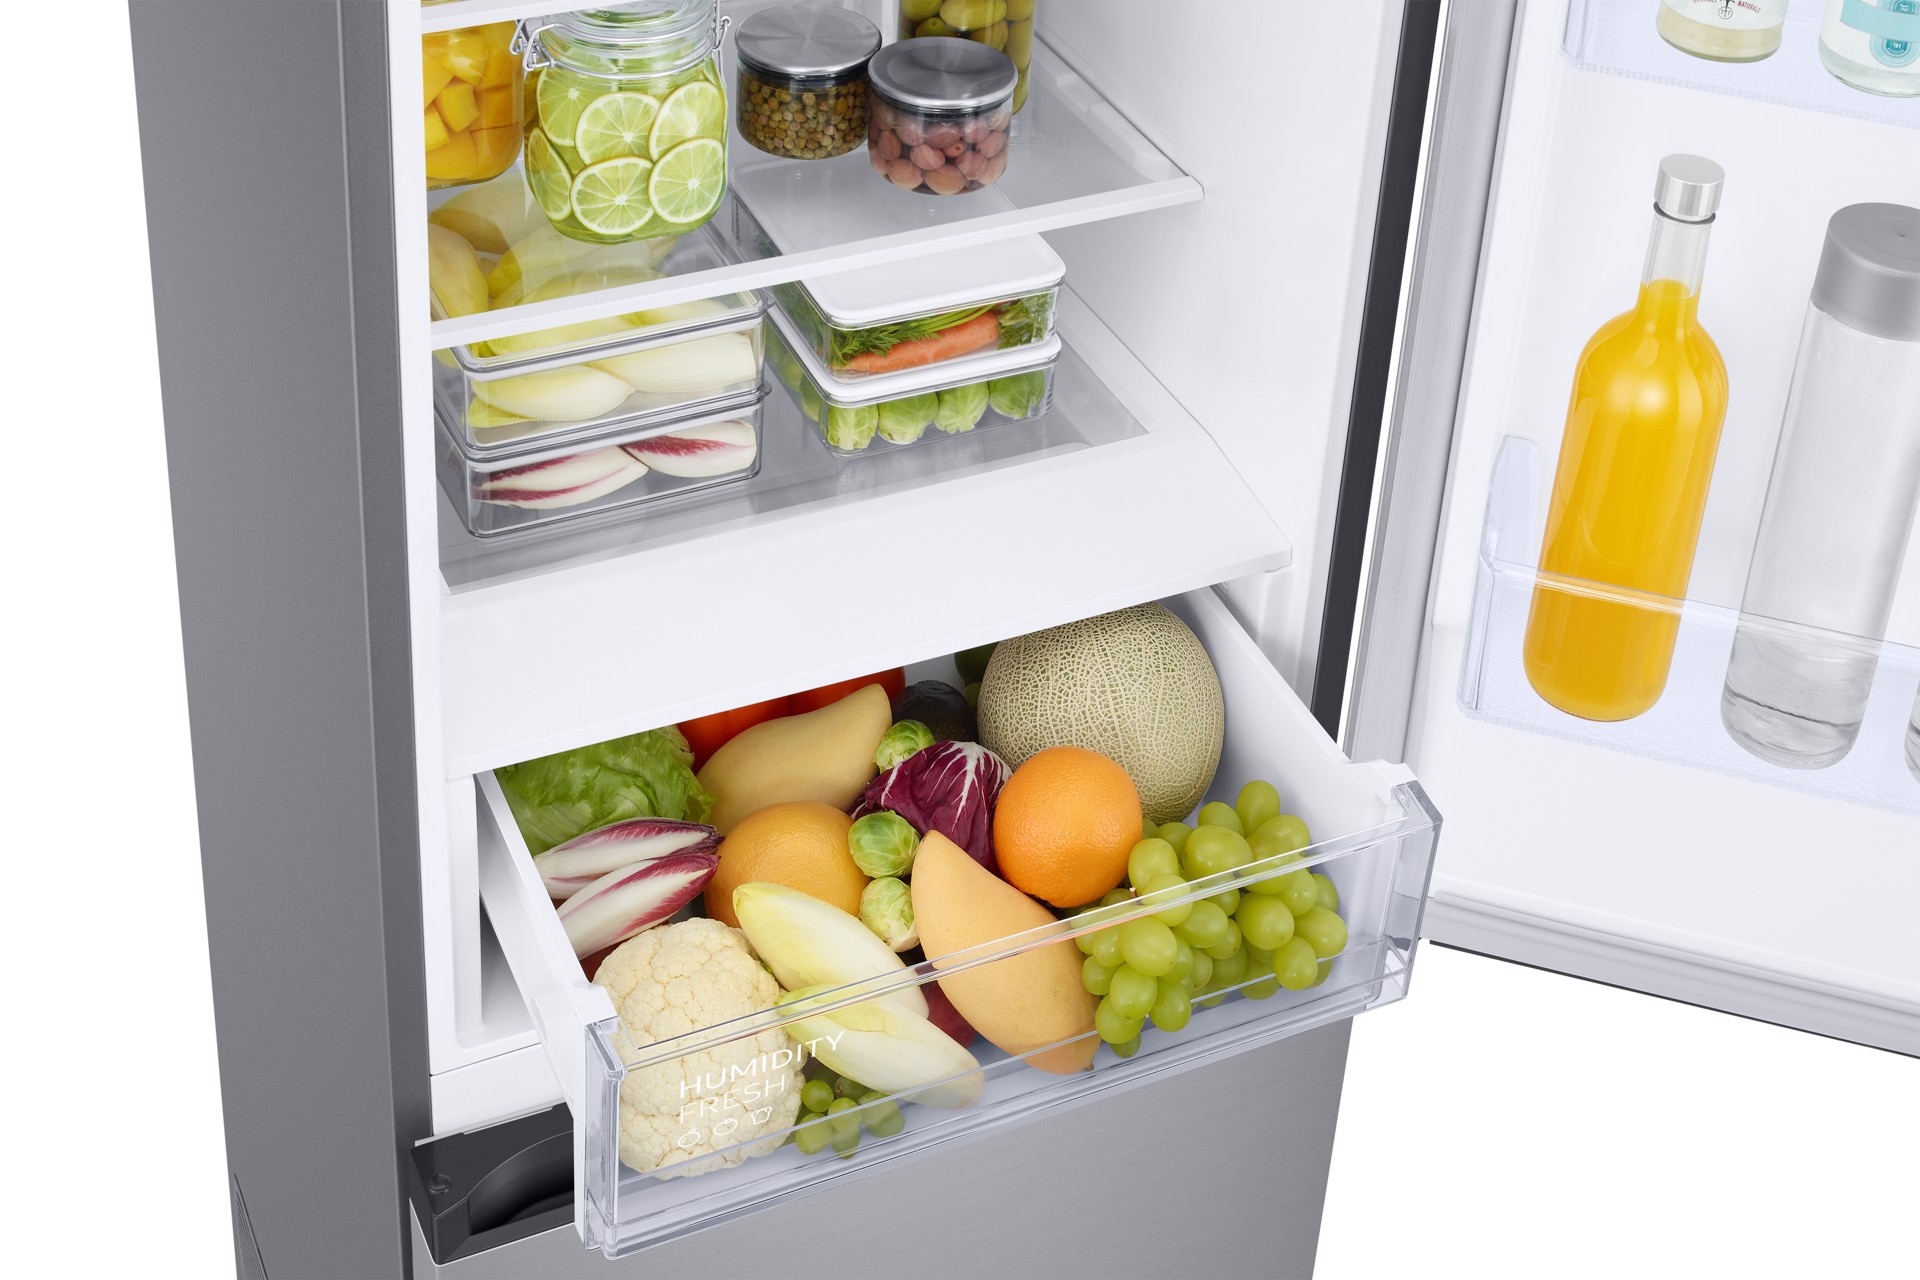 Réfrigérateur Samsung 390L 